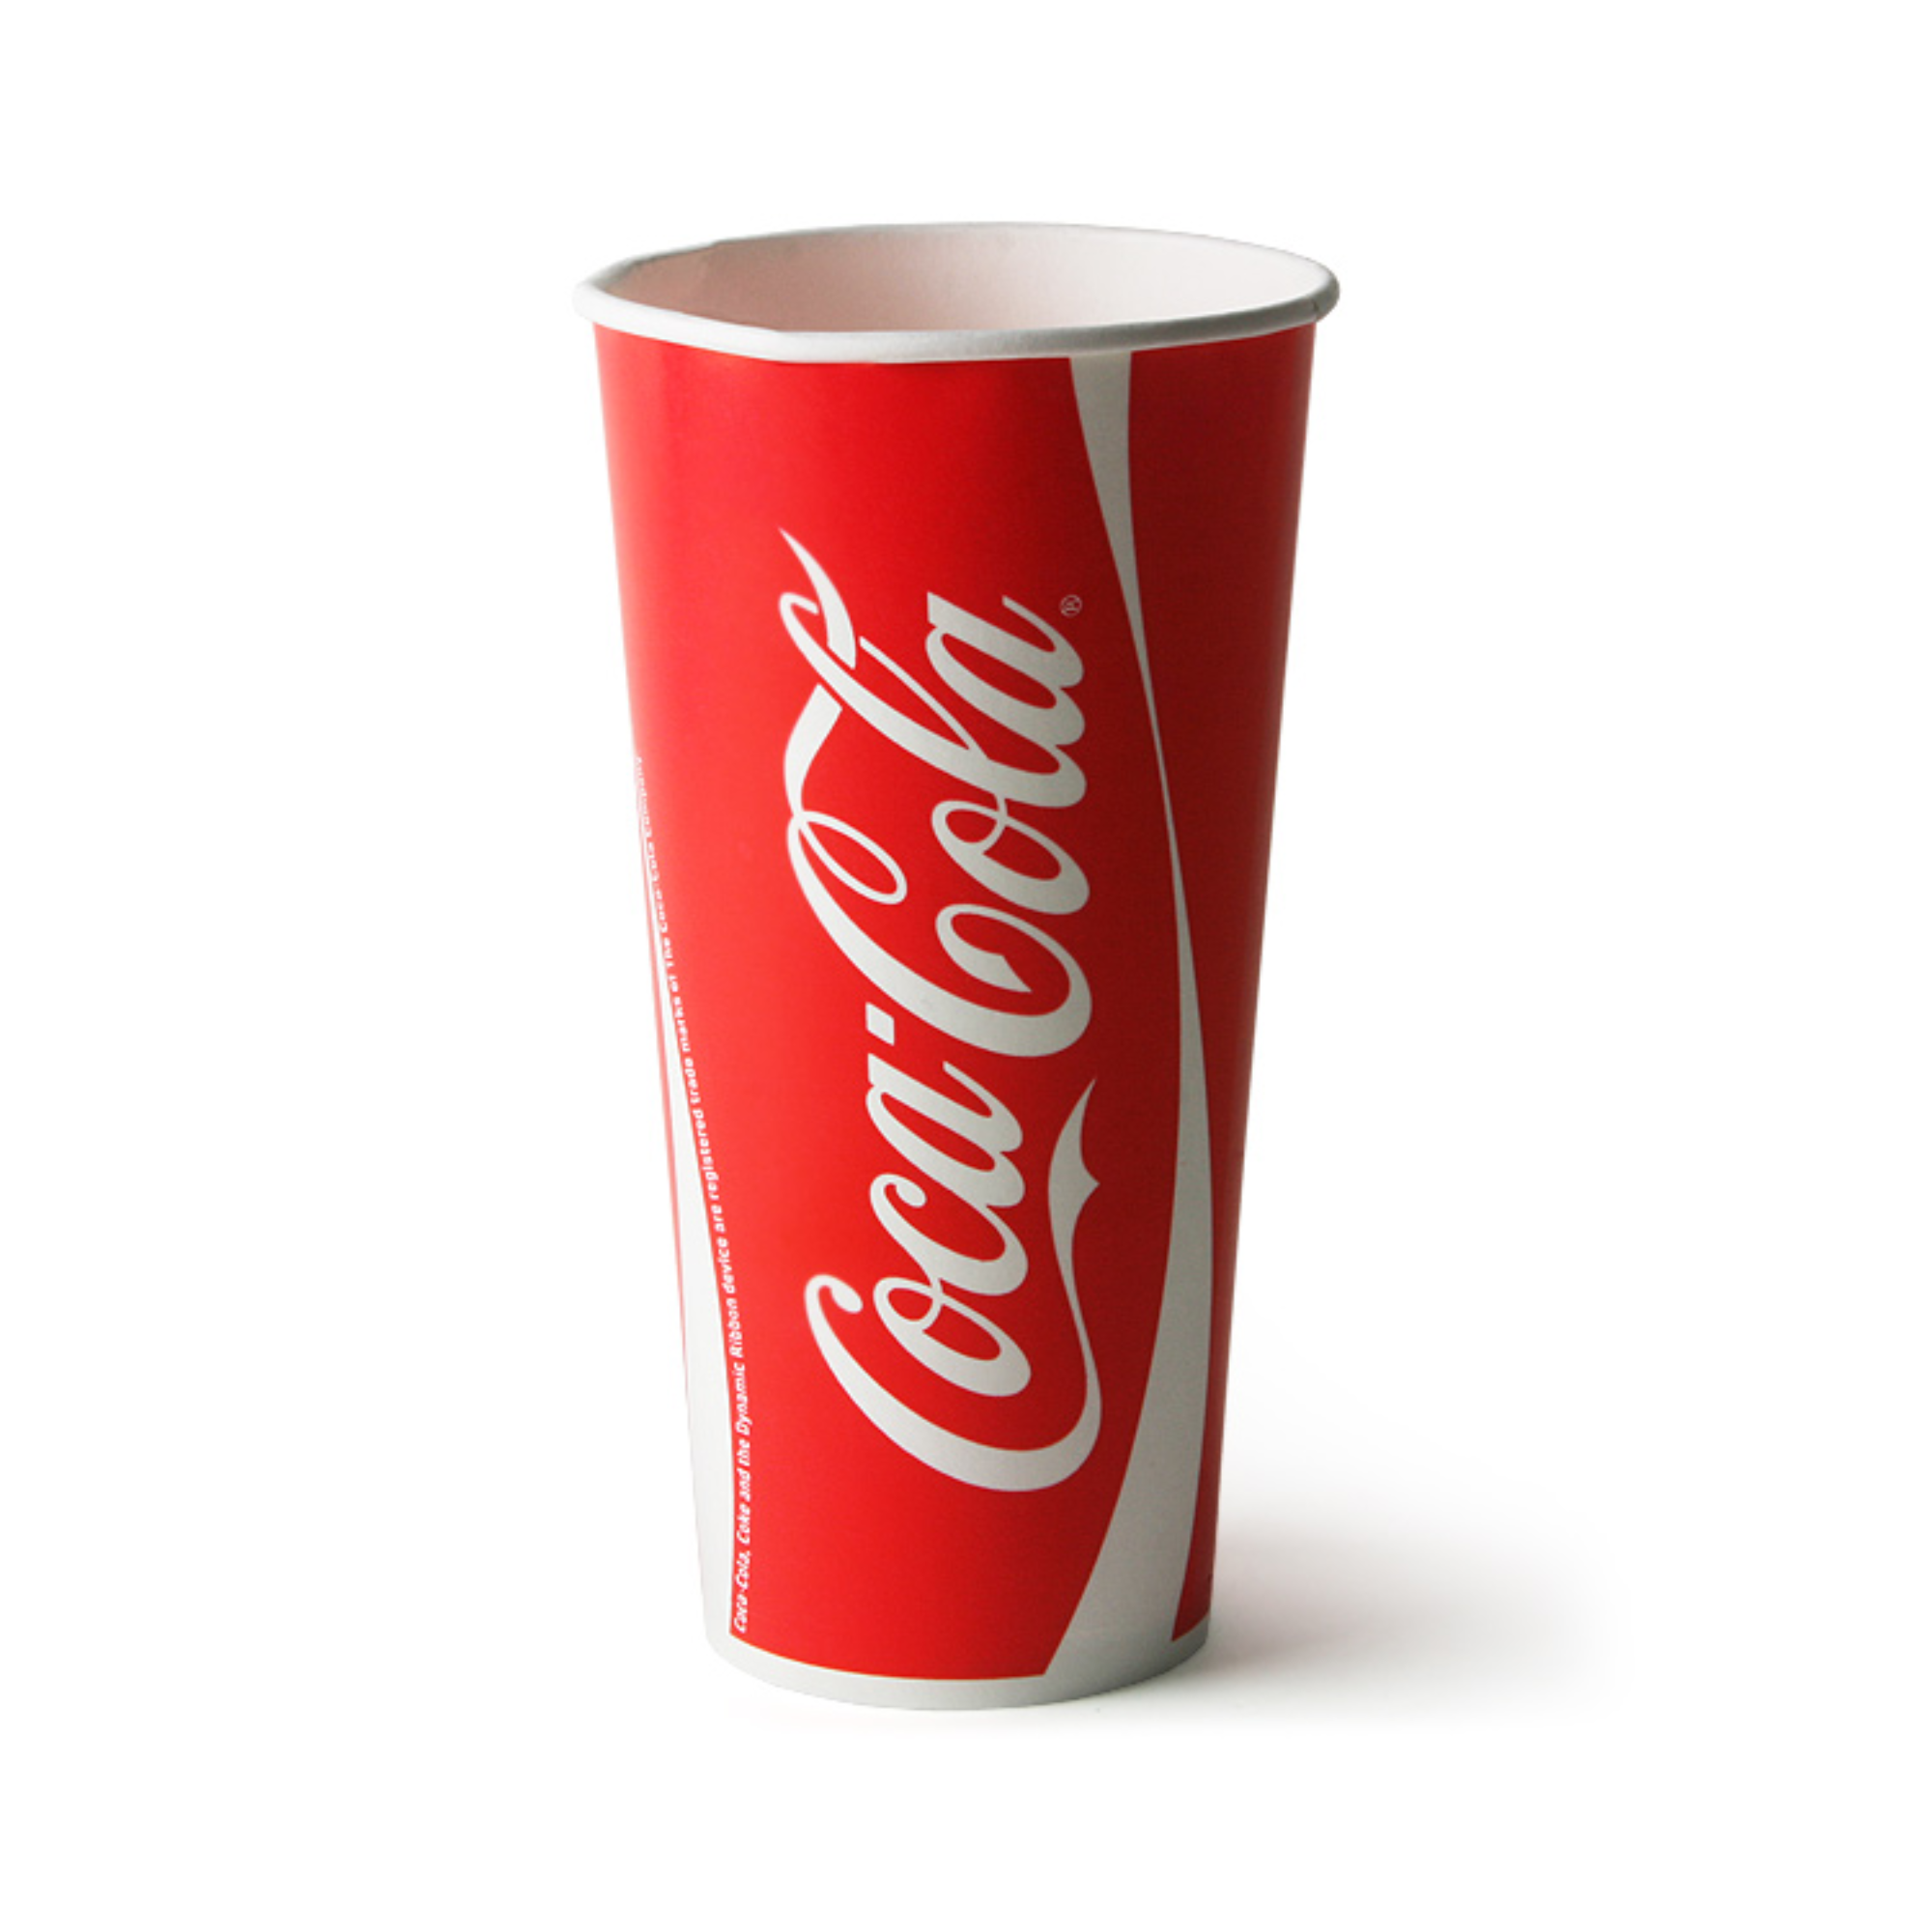 Coca Cola 400 мл. Стакан Кока-кола 300мл. Картонный стакан Coca-Cola. Кока кола в стаканчике. Покупка колла